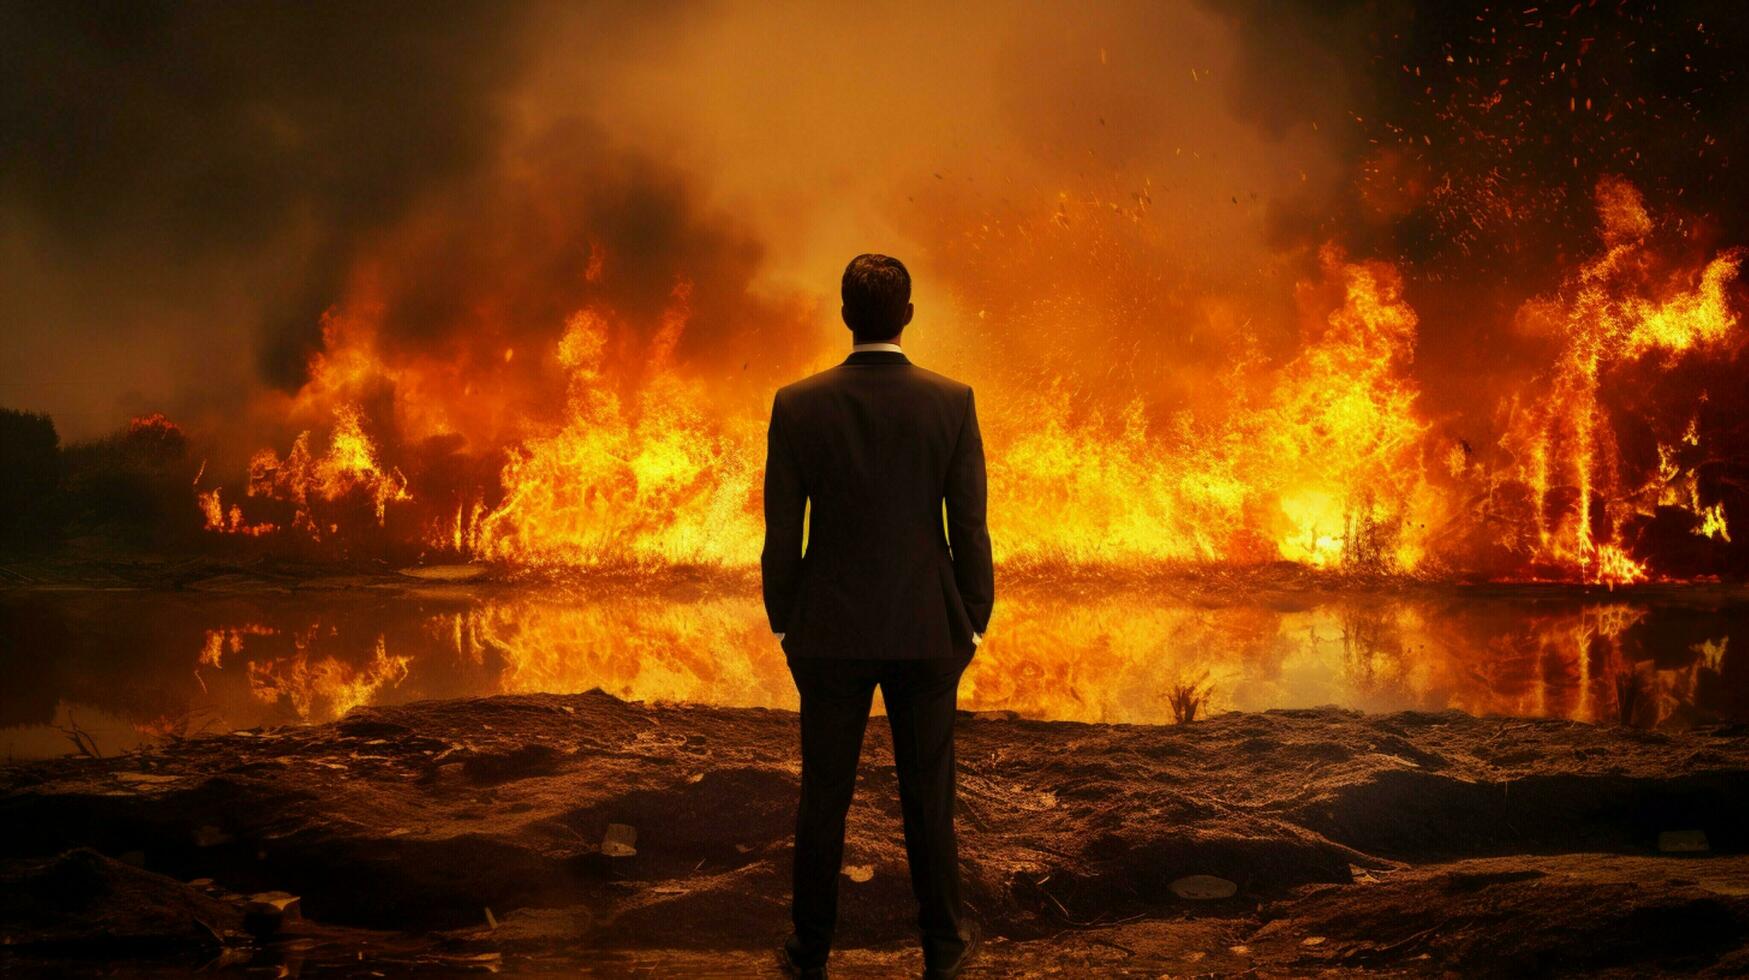 confiante homem de negocios em pé no meio queimando natural foto